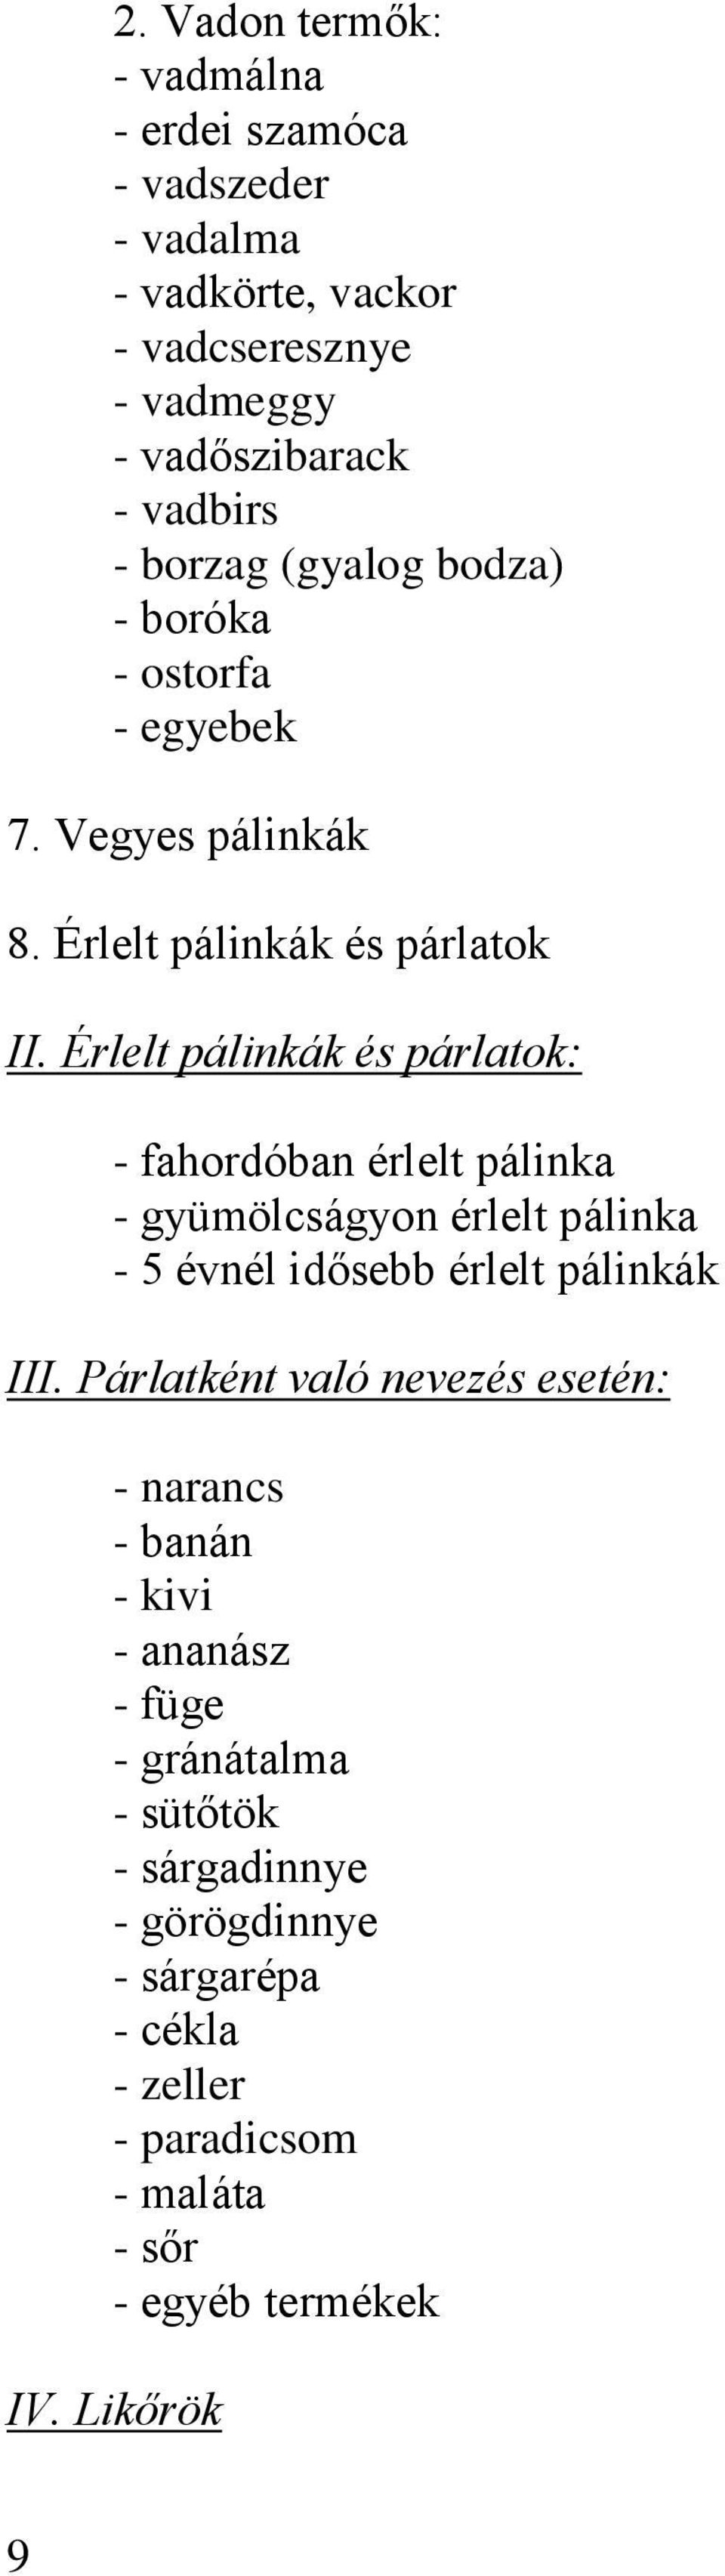 Érlelt pálinkák és párlatok: - fahordóban érlelt pálinka - gyümölcságyon érlelt pálinka - 5 évnél idősebb érlelt pálinkák III.